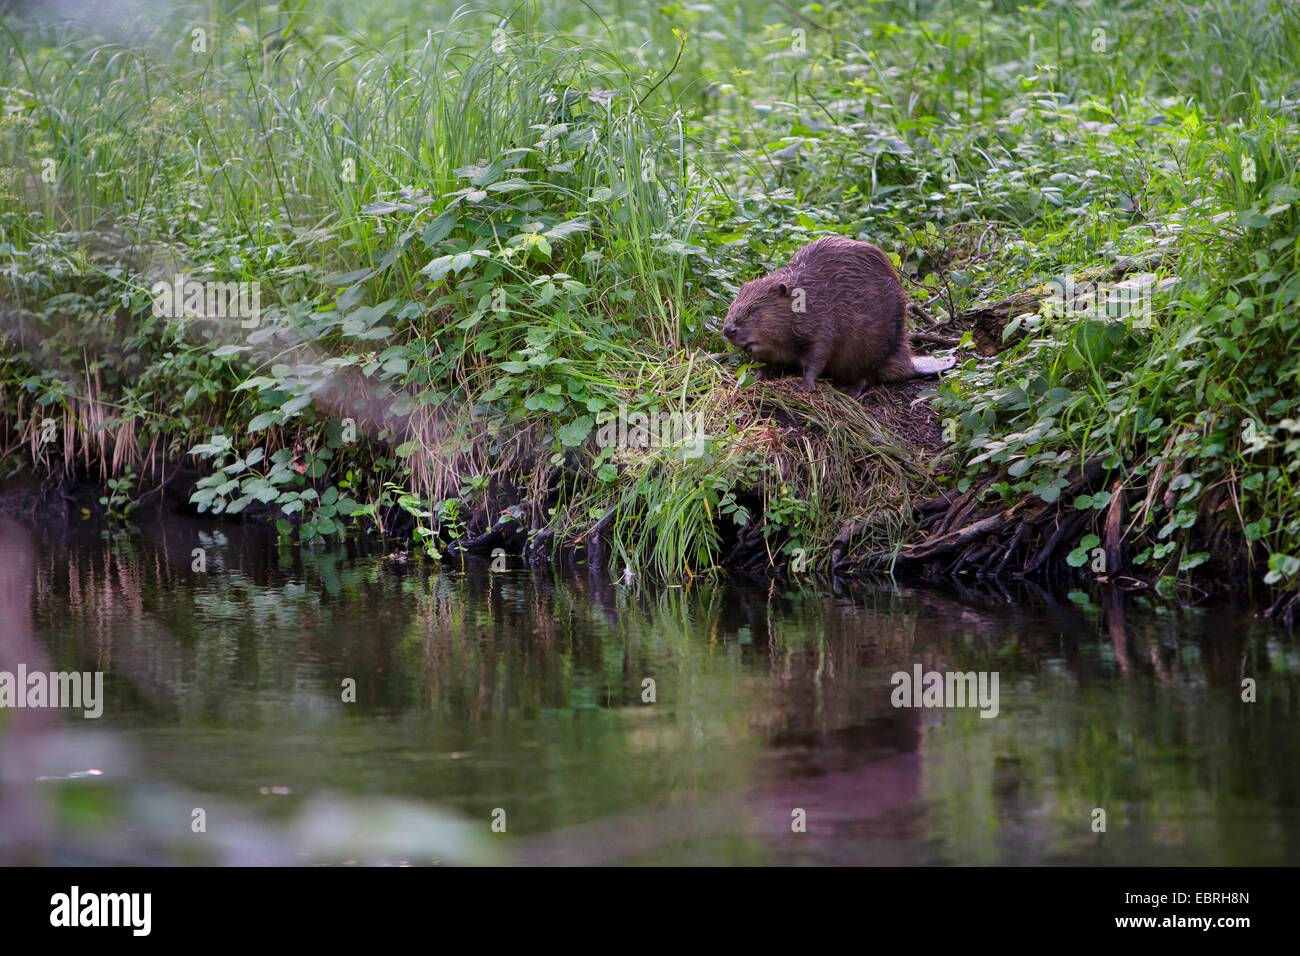 Le castor d'Eurasie, castor européen (Castor fiber), assis sur une rive, Allemagne Banque D'Images